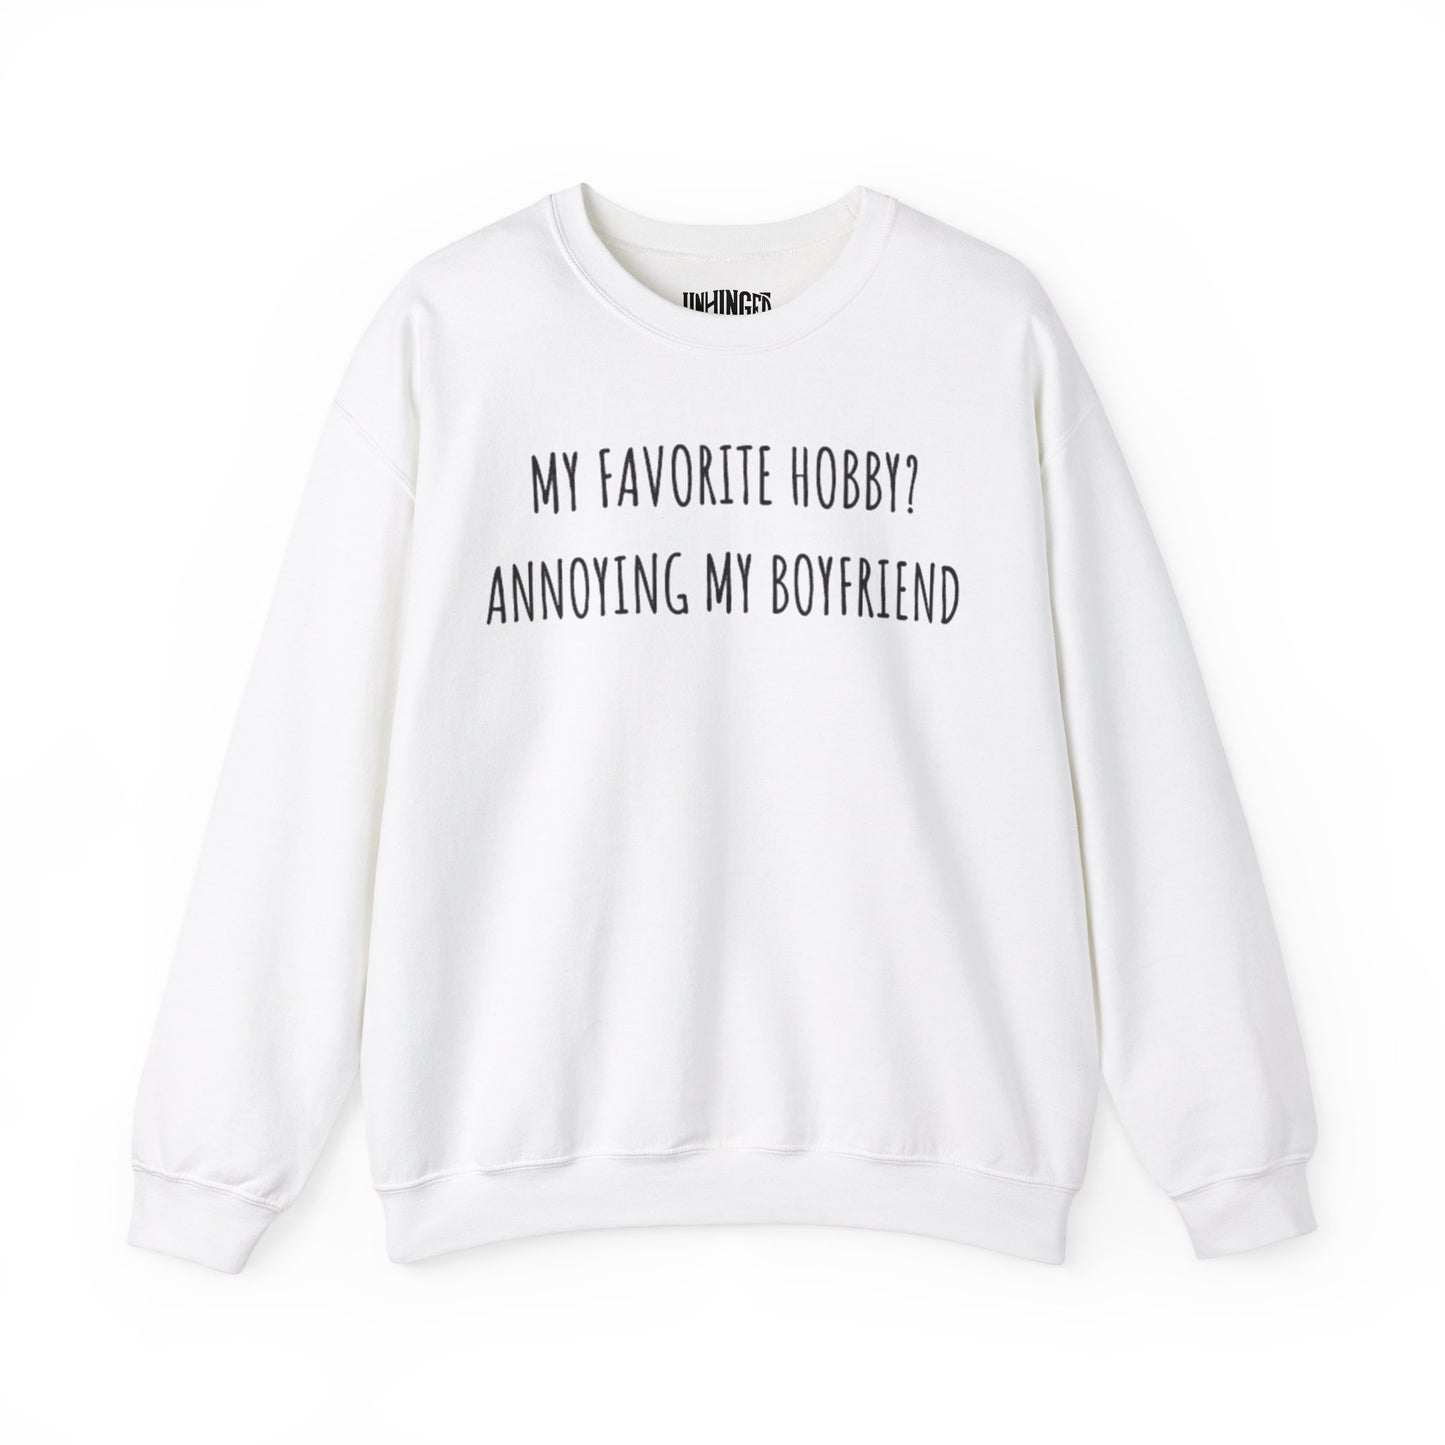 Annoying My Boyfriend™ Crewneck Sweatshirt